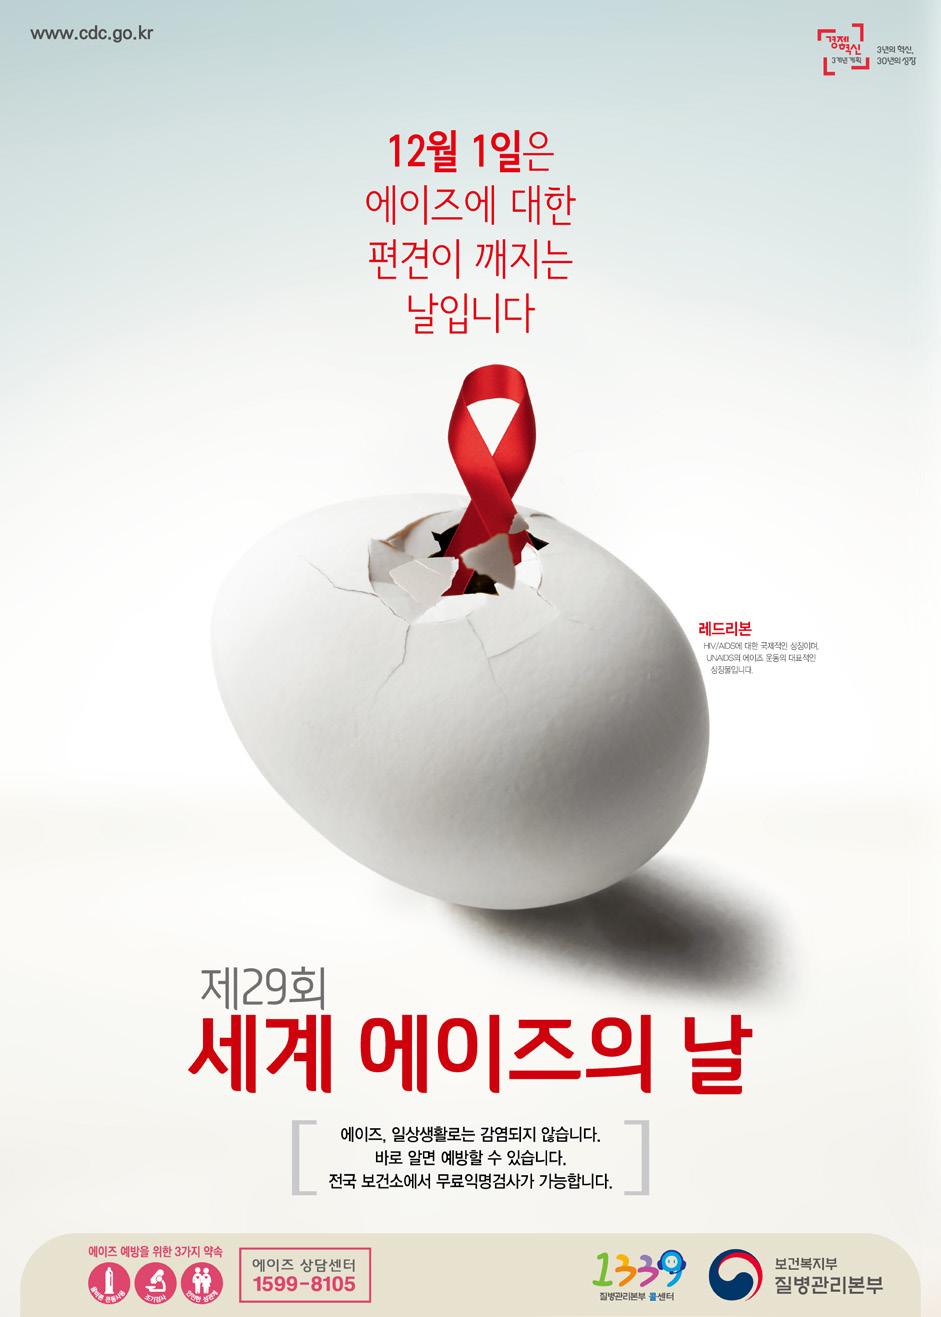 * 2020년까지 UNAIDS Fast Track 목표 1 신규 HIV 감염을연간 50만명미만으로감소시킴 (2015년: 연 210만명 ) 2 AIDS로인한사망을연간 50만명미만으로감소시킴 (2015년: 연 110만명 ) 3 AIDS로인한차별철폐 이와더불어 UNAIDS는 HIV/AIDS 검진과치료에대한접근성보장강화를위하여 90-90-90 목표